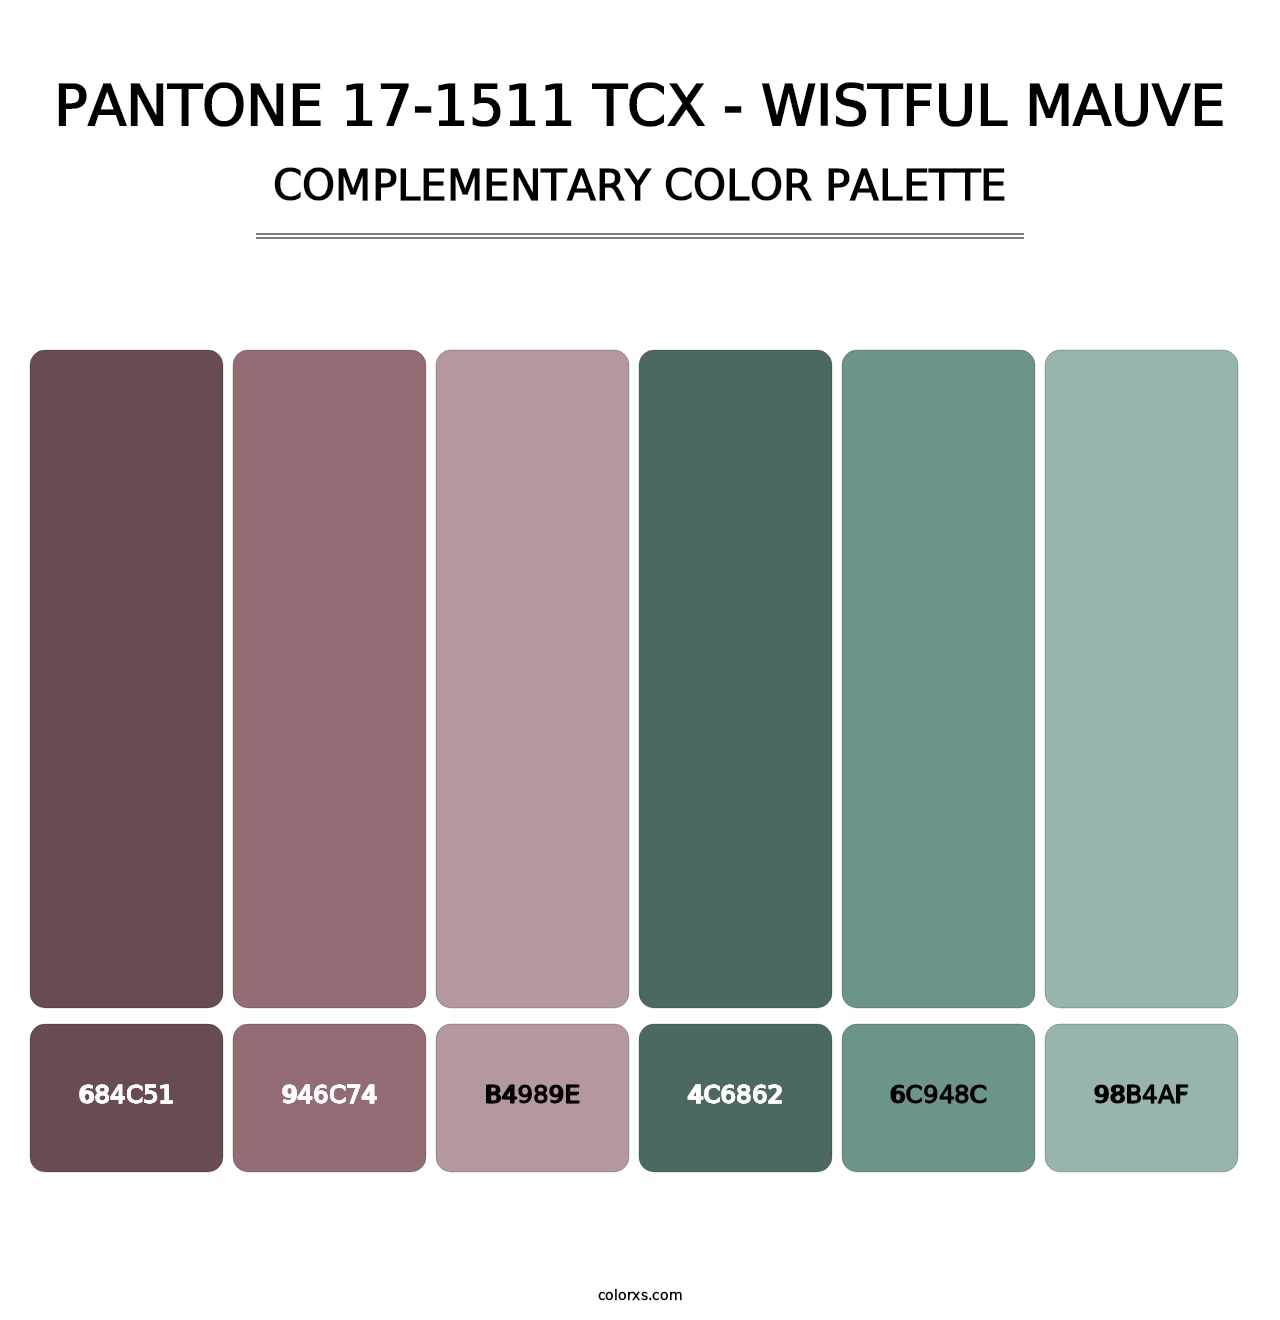 PANTONE 17-1511 TCX - Wistful Mauve - Complementary Color Palette